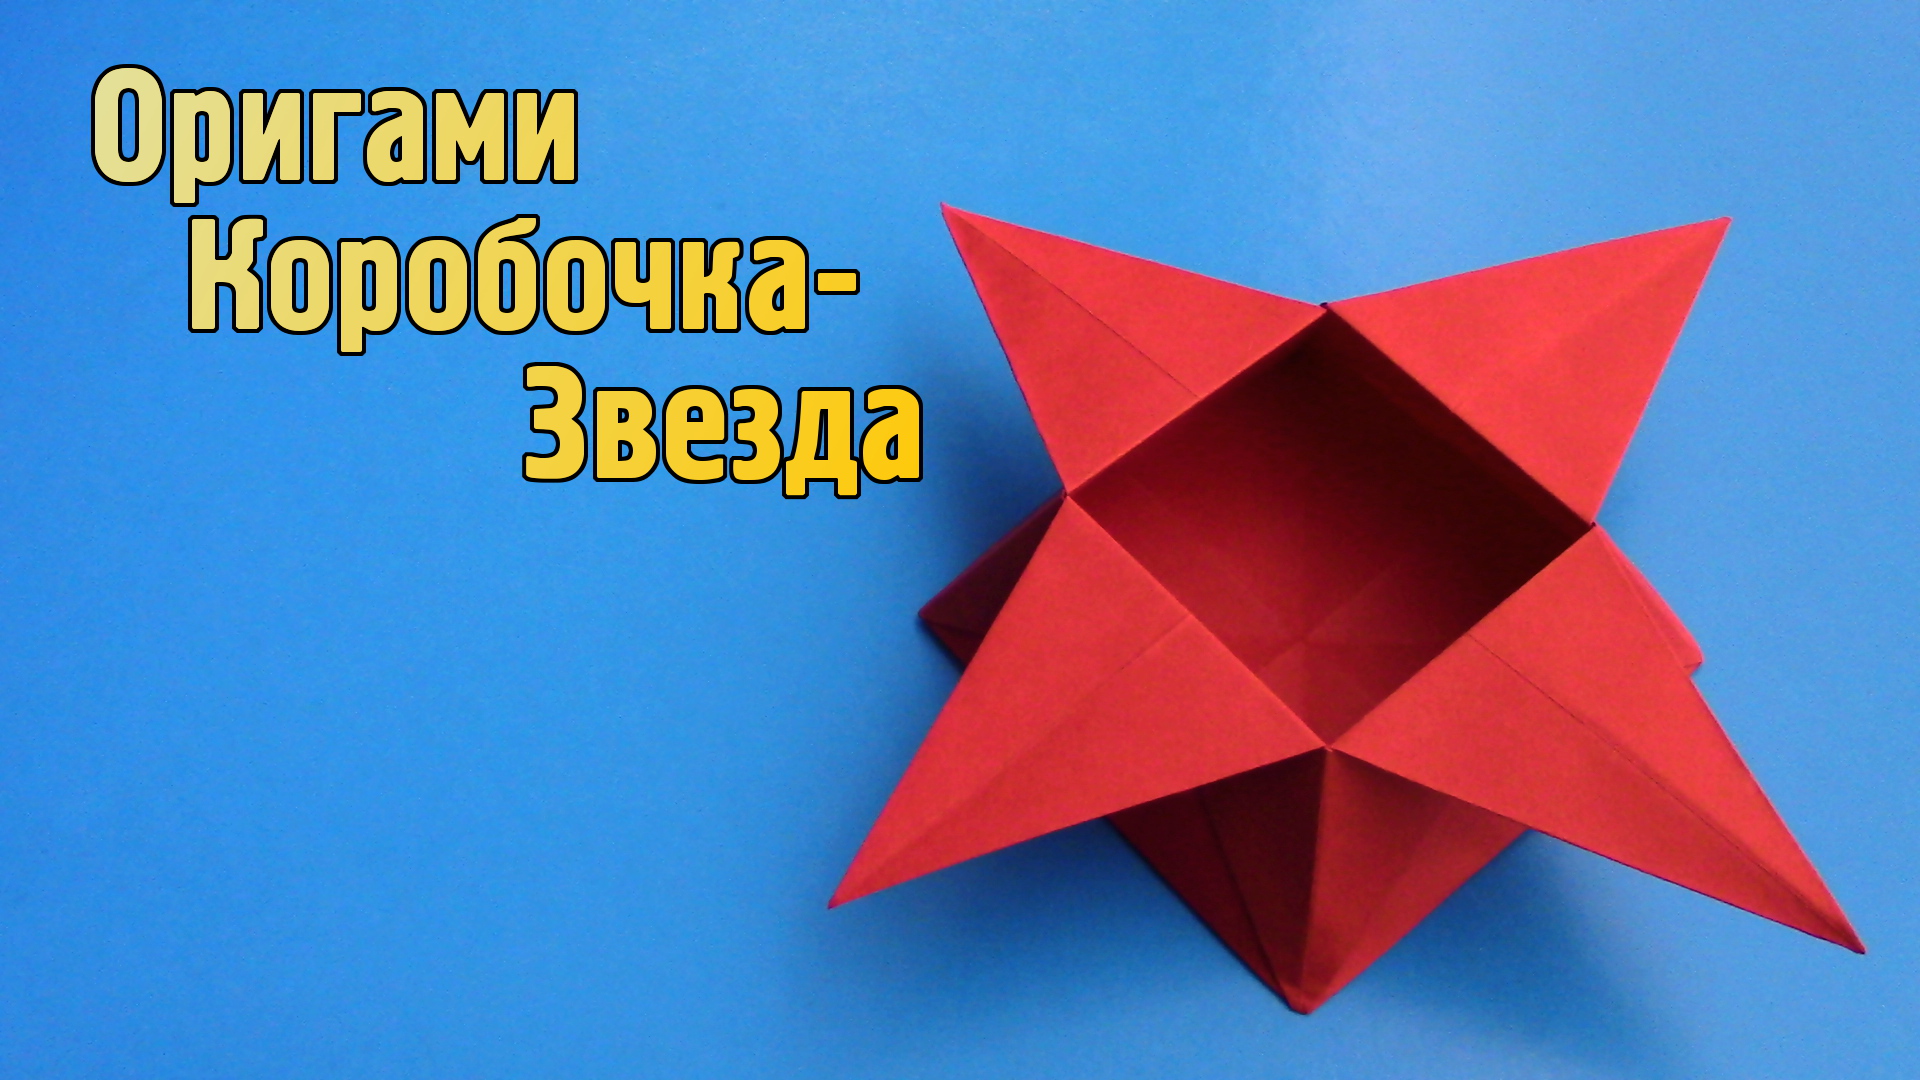 Как сделать Коробочку из бумаги своими руками | Оригами Коробочка Звезда для детей без клея